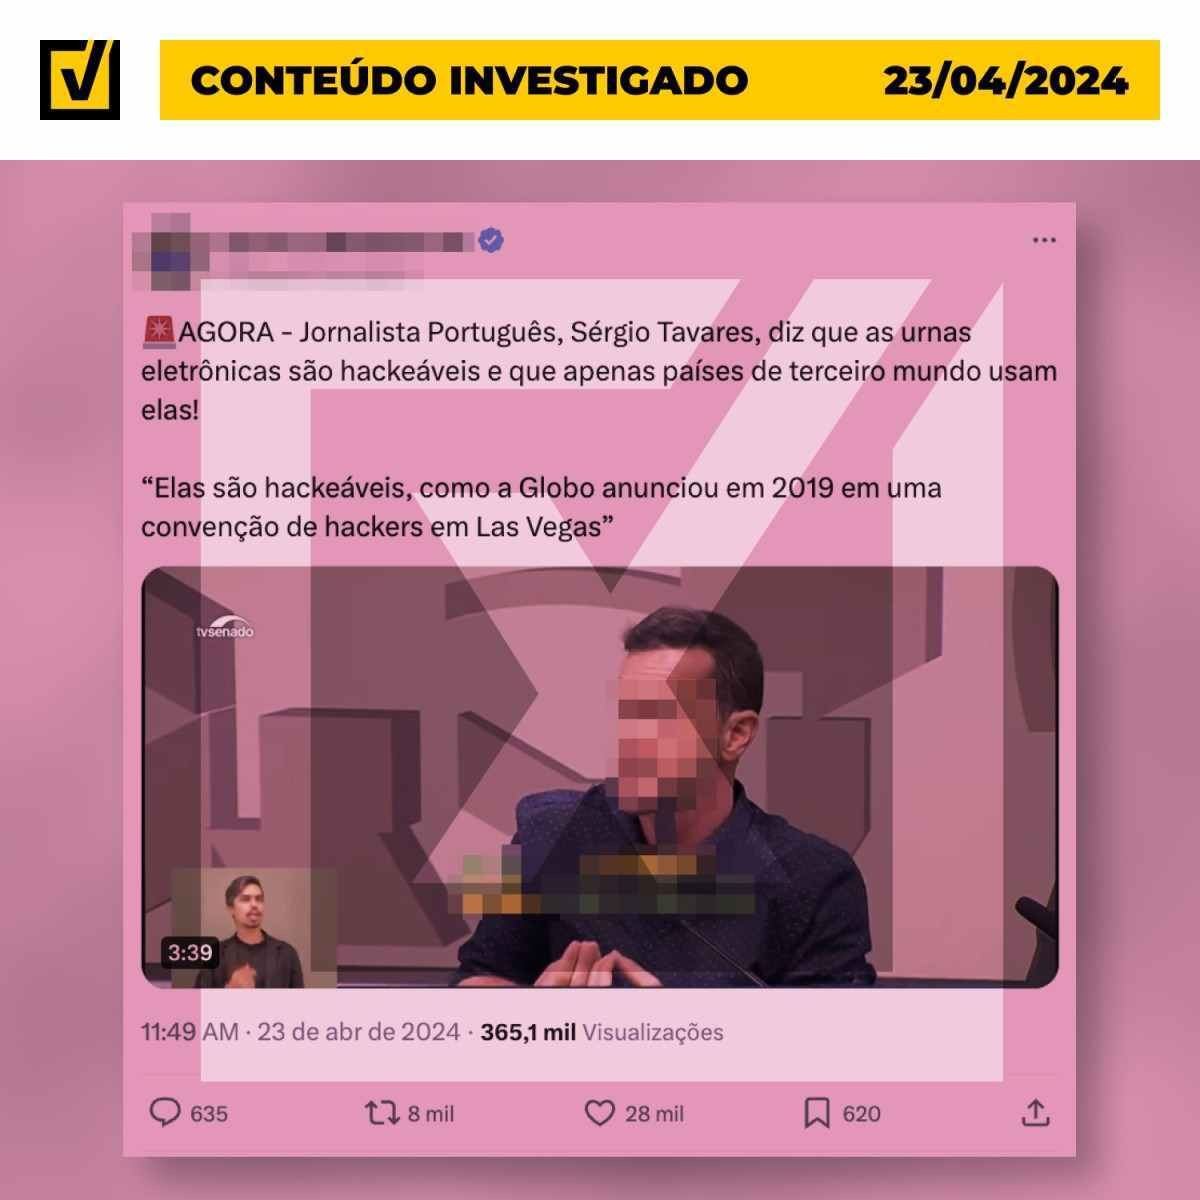 Influenciador português engana ao afirmar que Globo noticiou sobre urnas eletrônicas brasileiras hackeadas nos EUA